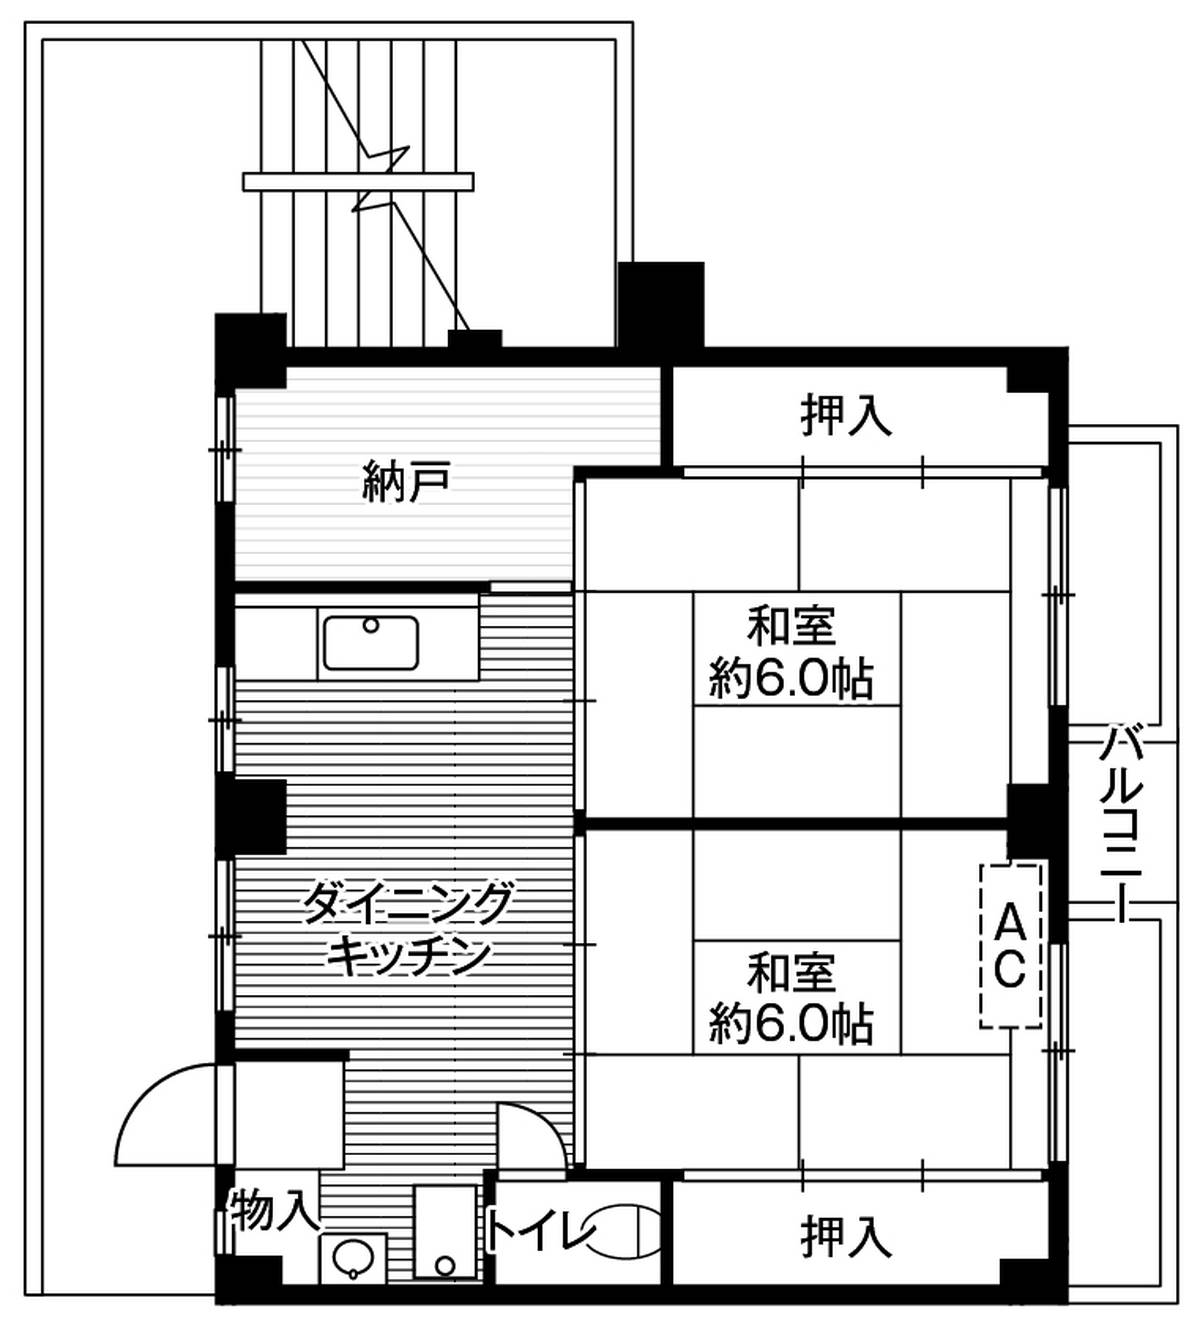 2DK floorplan of Village House Futawa in Funabashi-shi